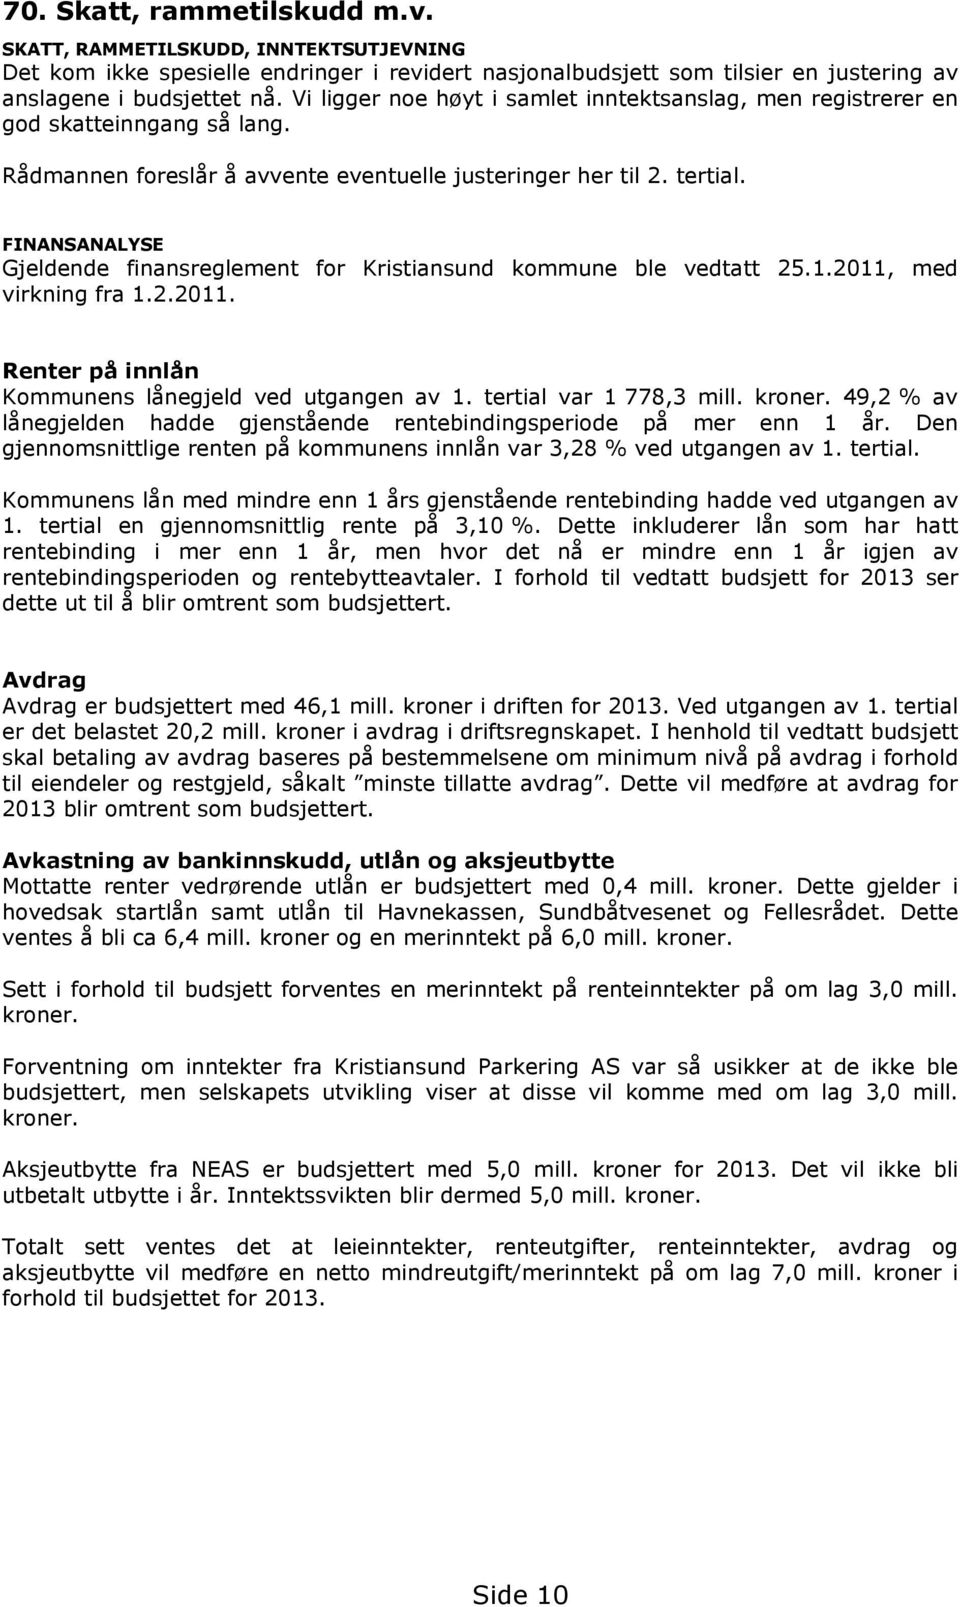 FINANSANALYSE Gjeldende finansreglement for Kristiansund kommune ble vedtatt 25.1.2011, med virkning fra 1.2.2011. Renter på innlån Kommunens lånegjeld ved utgangen av 1. tertial var 1 778,3 mill.